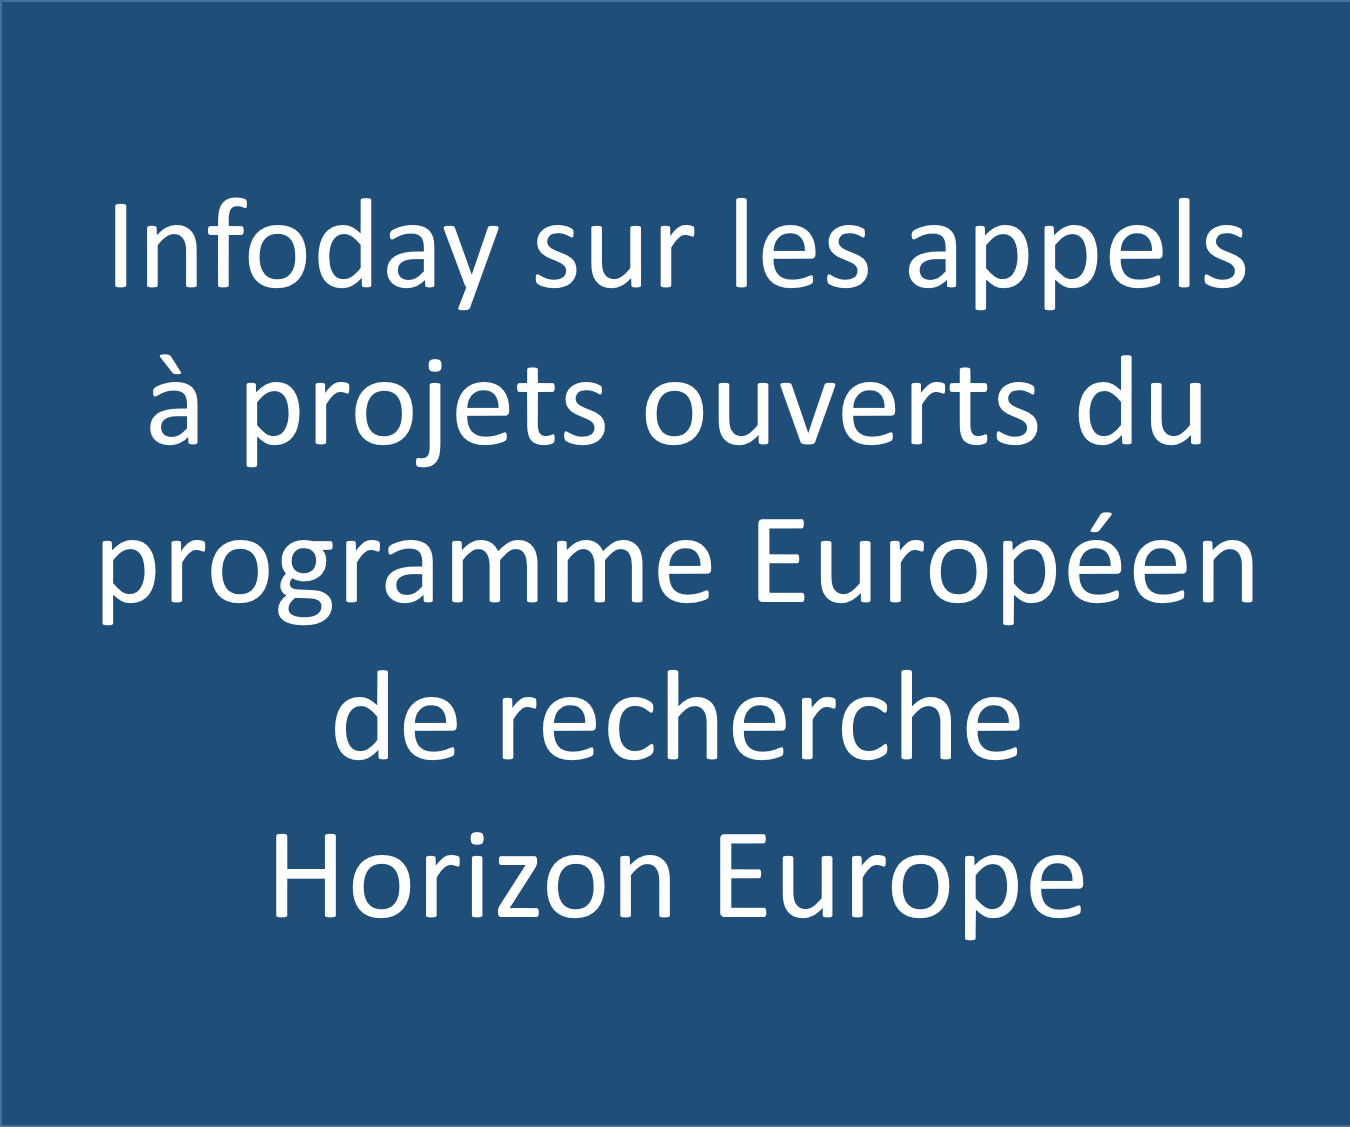 Infoday sur les appels à projets ouverts du programme Europeen de recherche Horizon Europe